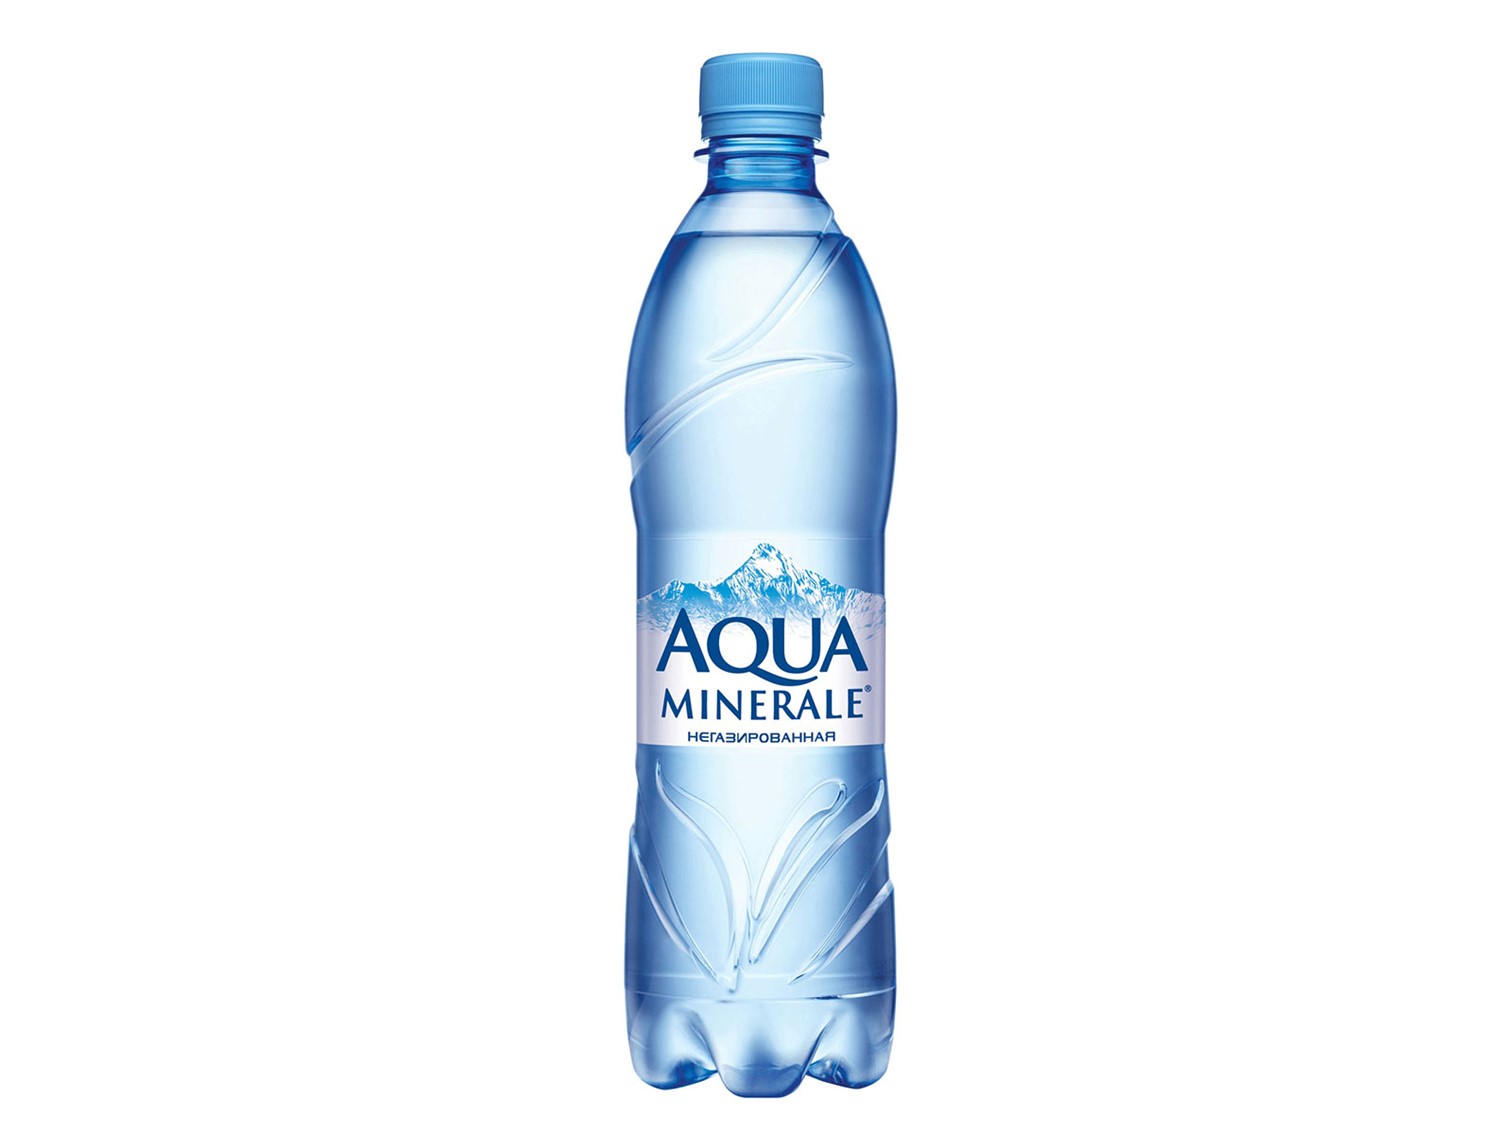 Бутылка негазированной воды